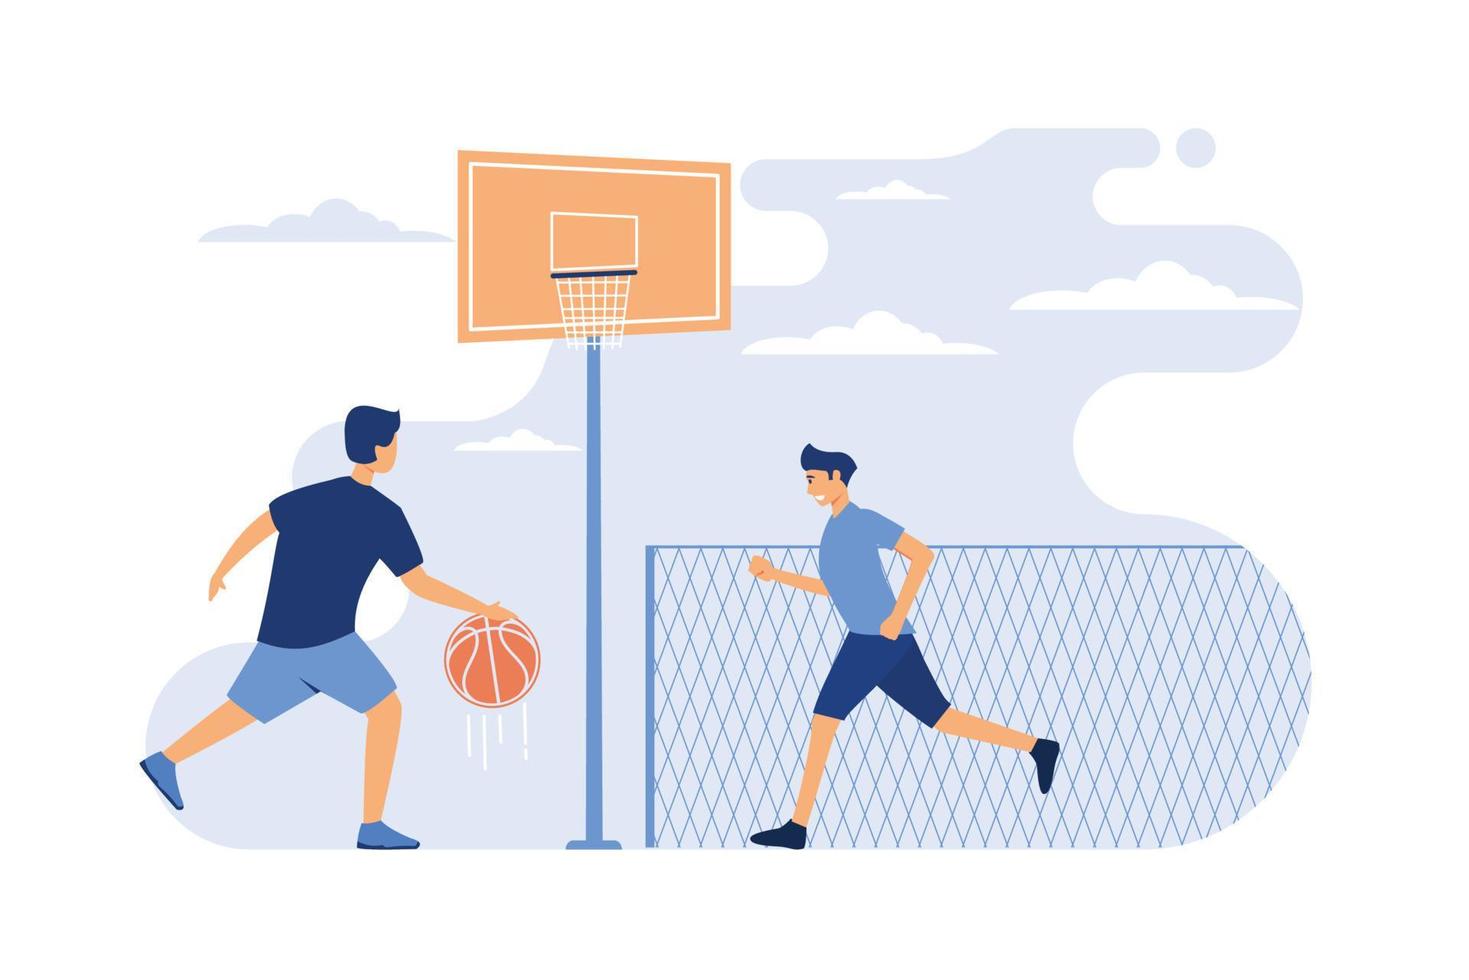 concepto de juegos deportivos al aire libre. dos jóvenes atléticos jugando baloncesto en un estadio urbano. vector